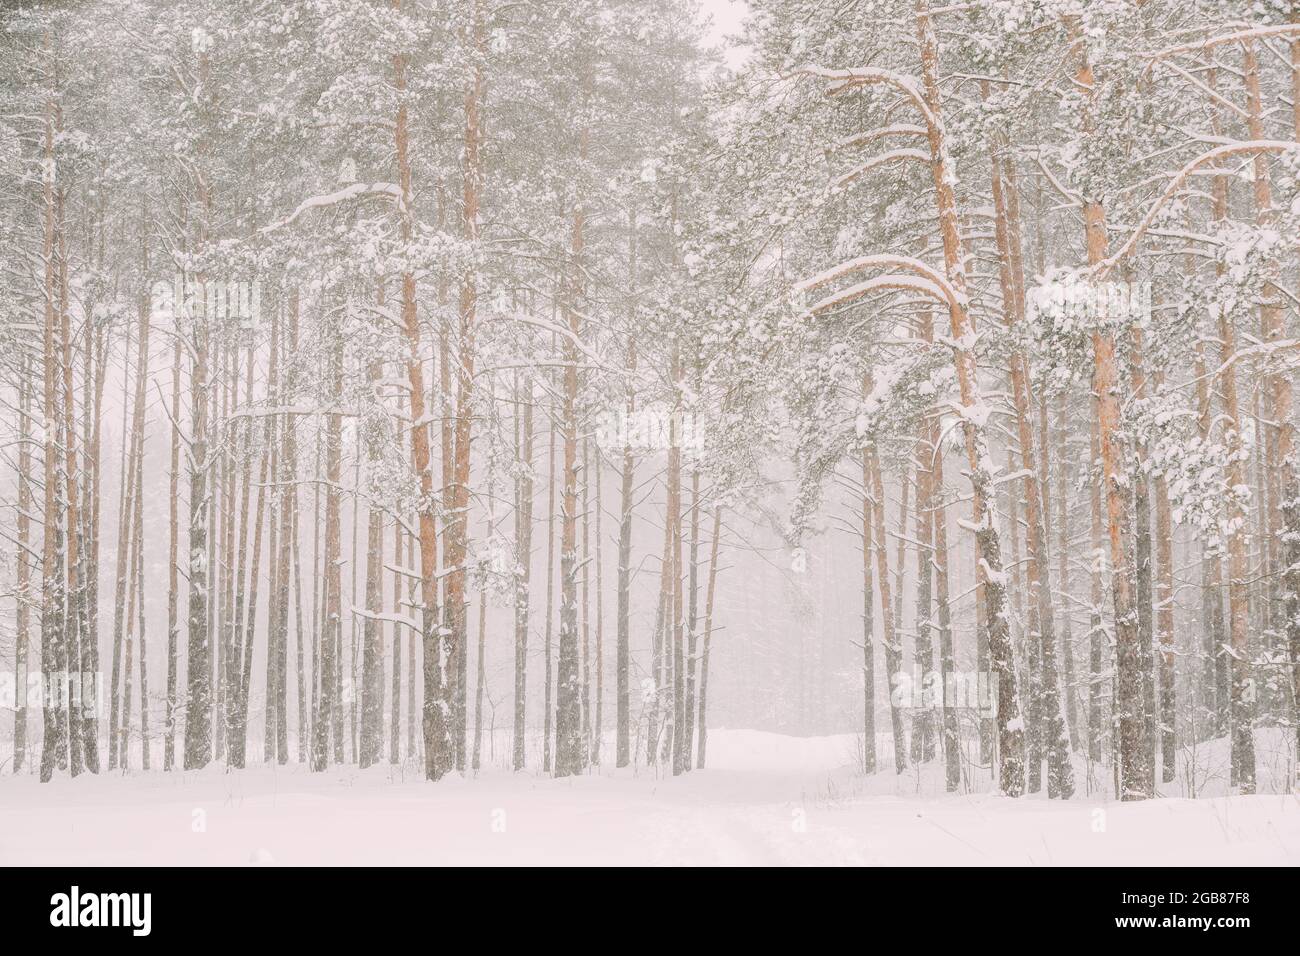 Forêt blanche enneigée en hiver Frosty Day. Neige dans les bois givré d'hiver. Météo enneigée. Hiver Forêt conifères enneigée. Blizzard à Windy Day Banque D'Images